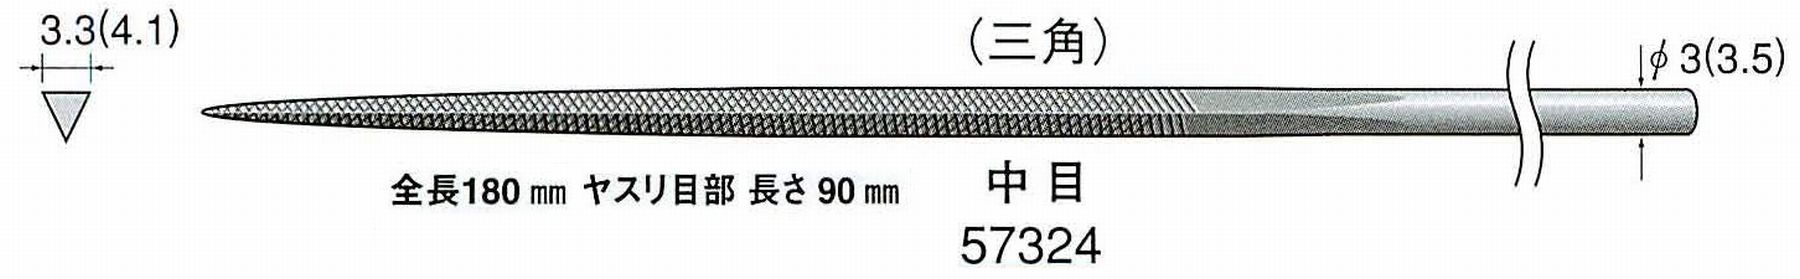 ナカニシ/NAKANISHI 精密仕上げヤスリ 三角 中目 軸径(シャンク)φ3.0mm(3.5) 57324